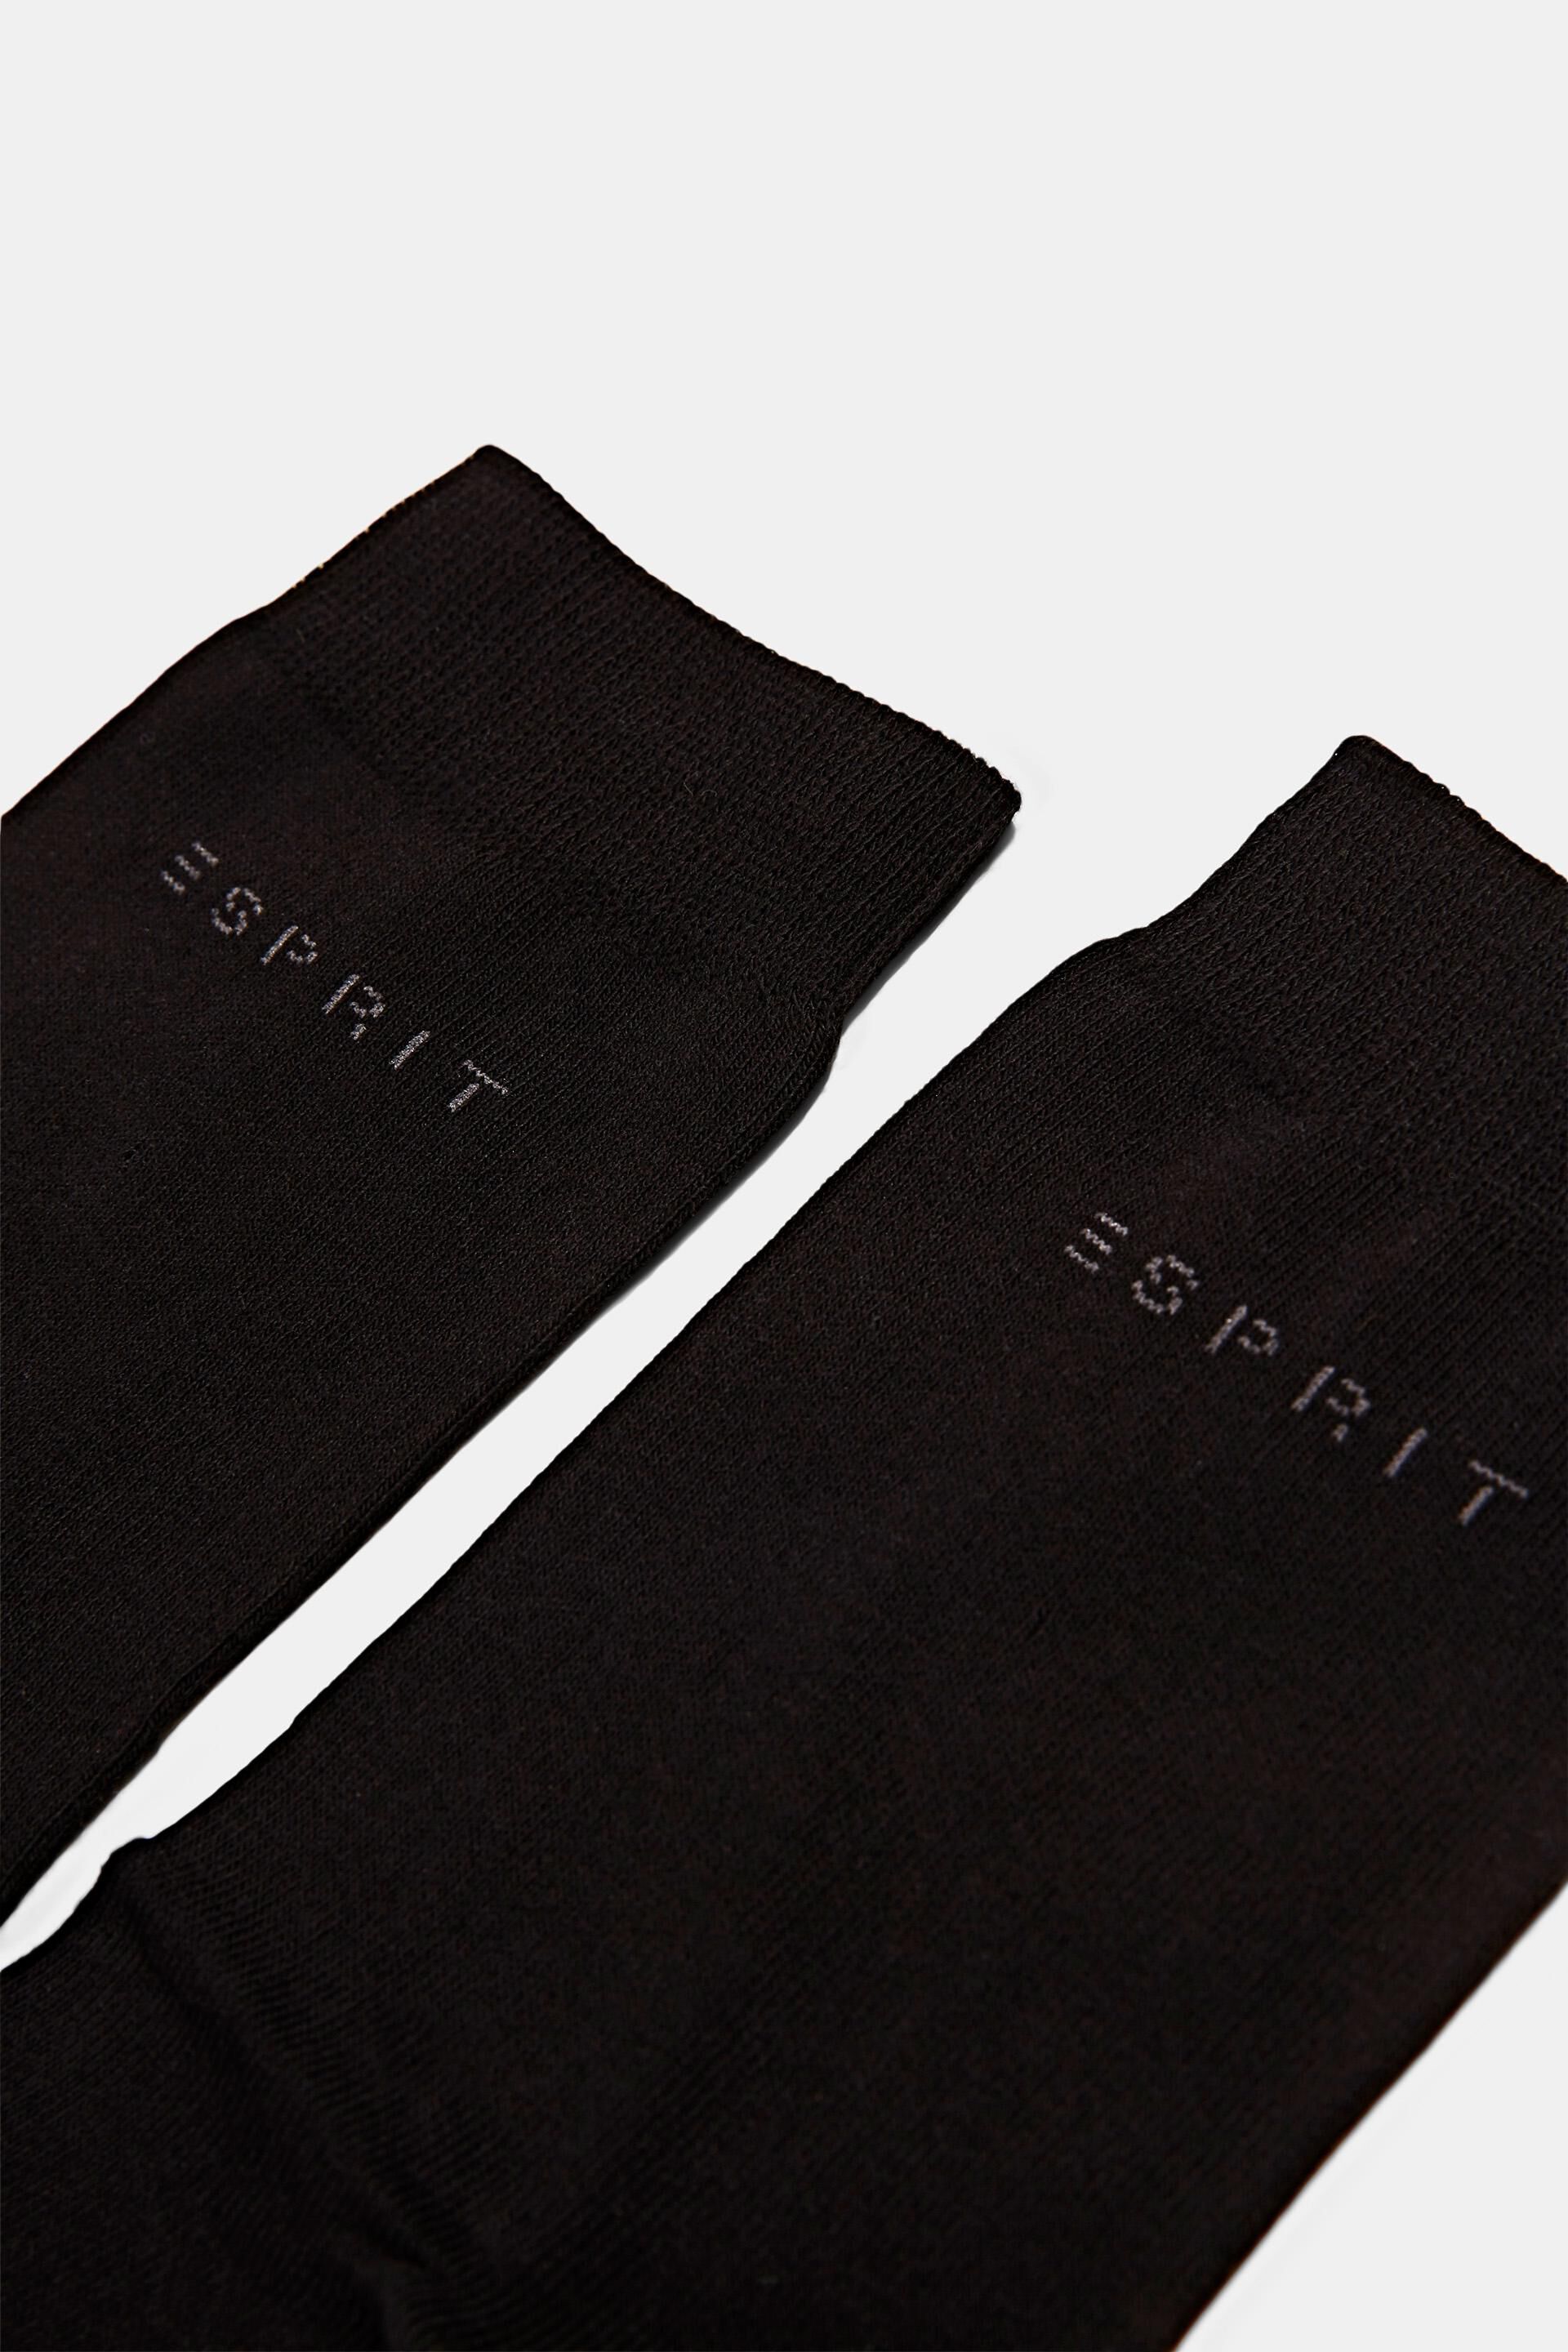 Esprit Online Store 5er-Pack einfarbige Socken Bio-Baumwolle aus